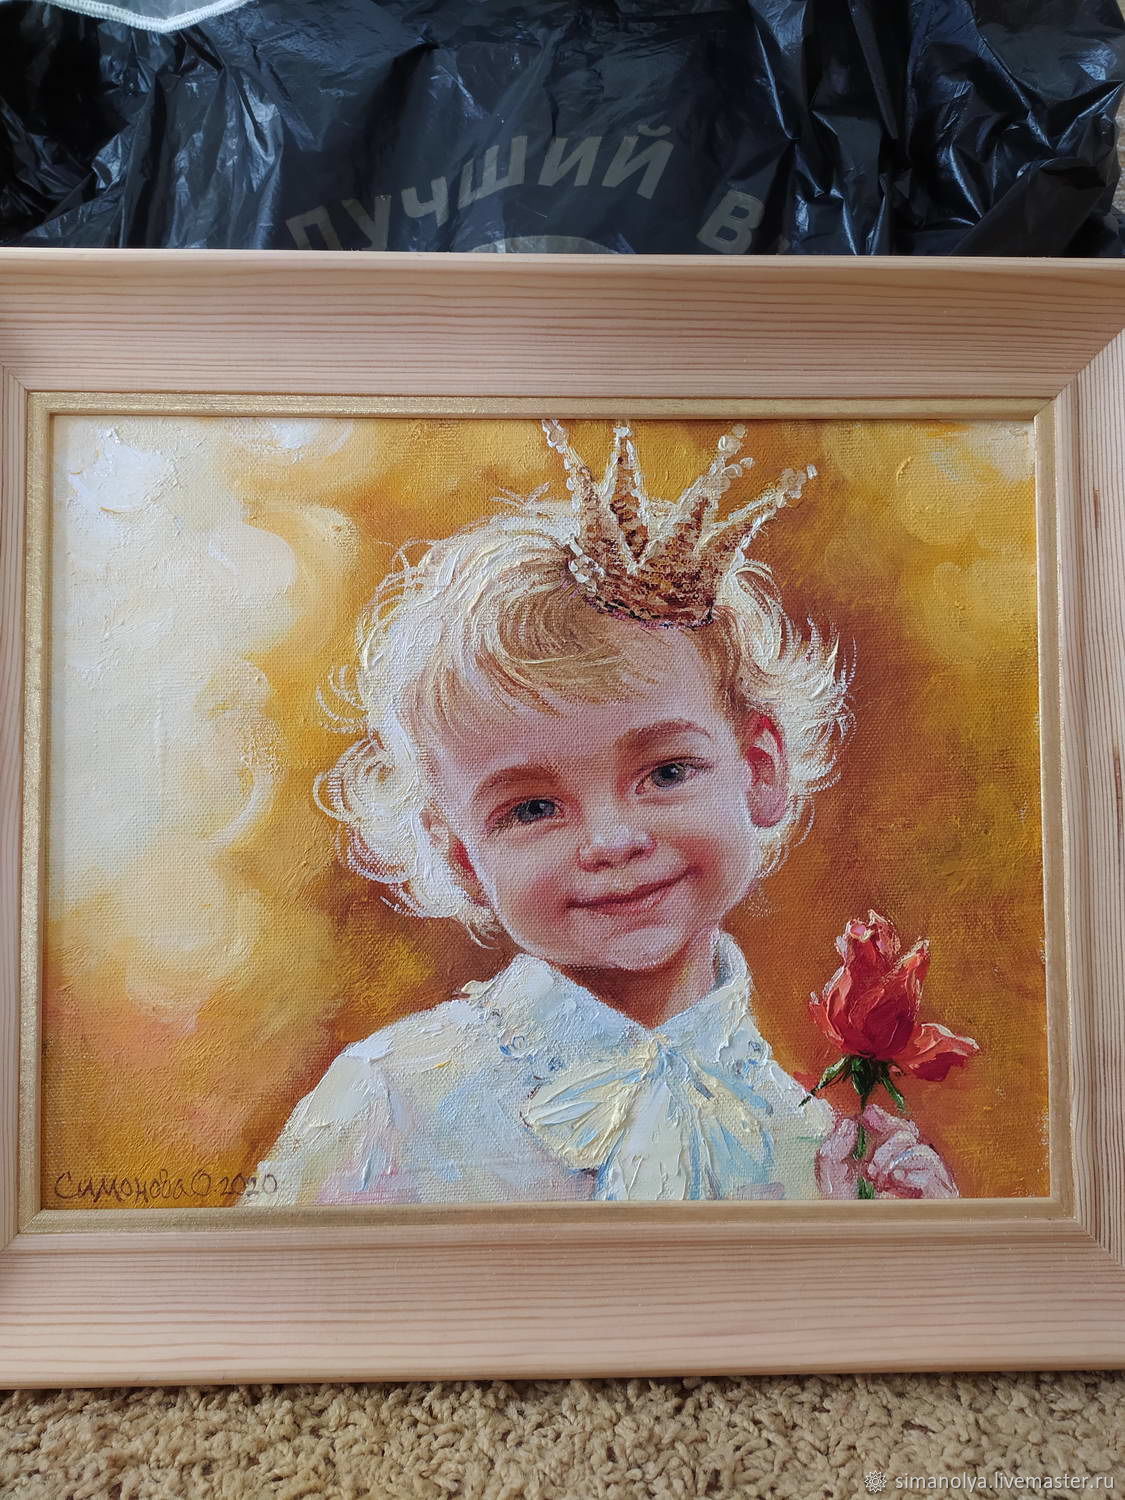 Картина по номерам маленький принц